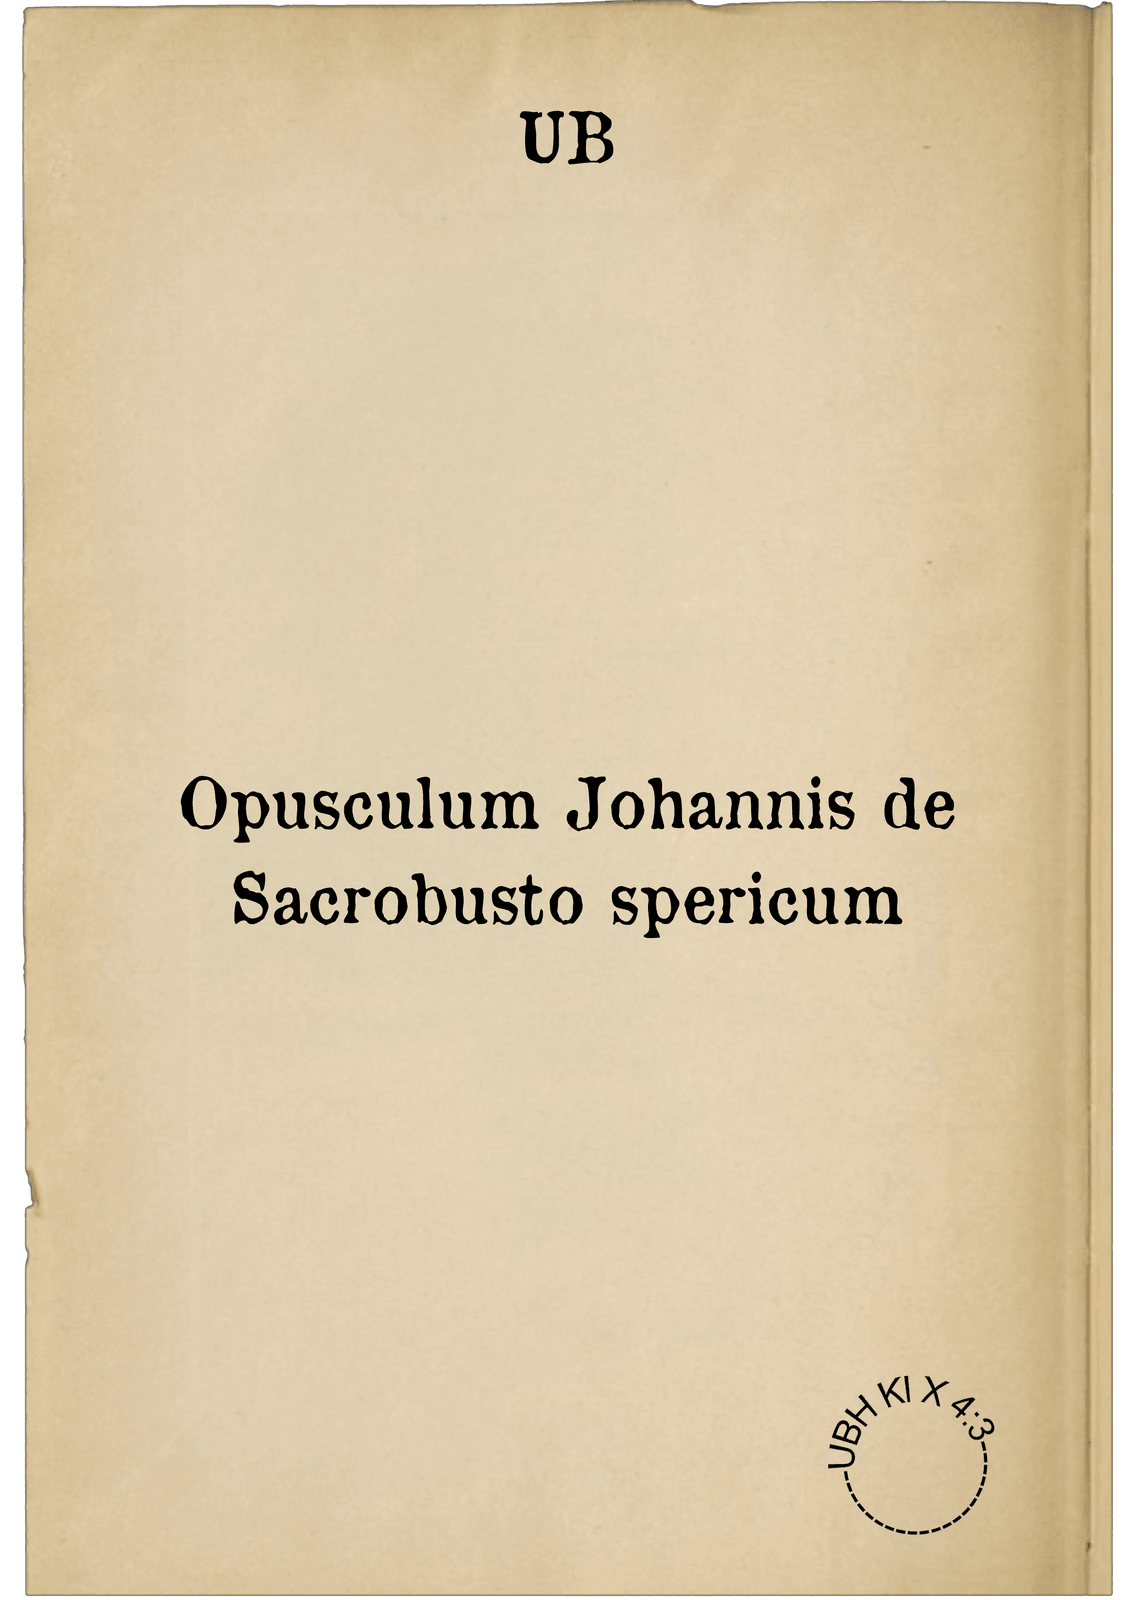 Opusculum Johannis de Sacrobusto spericum